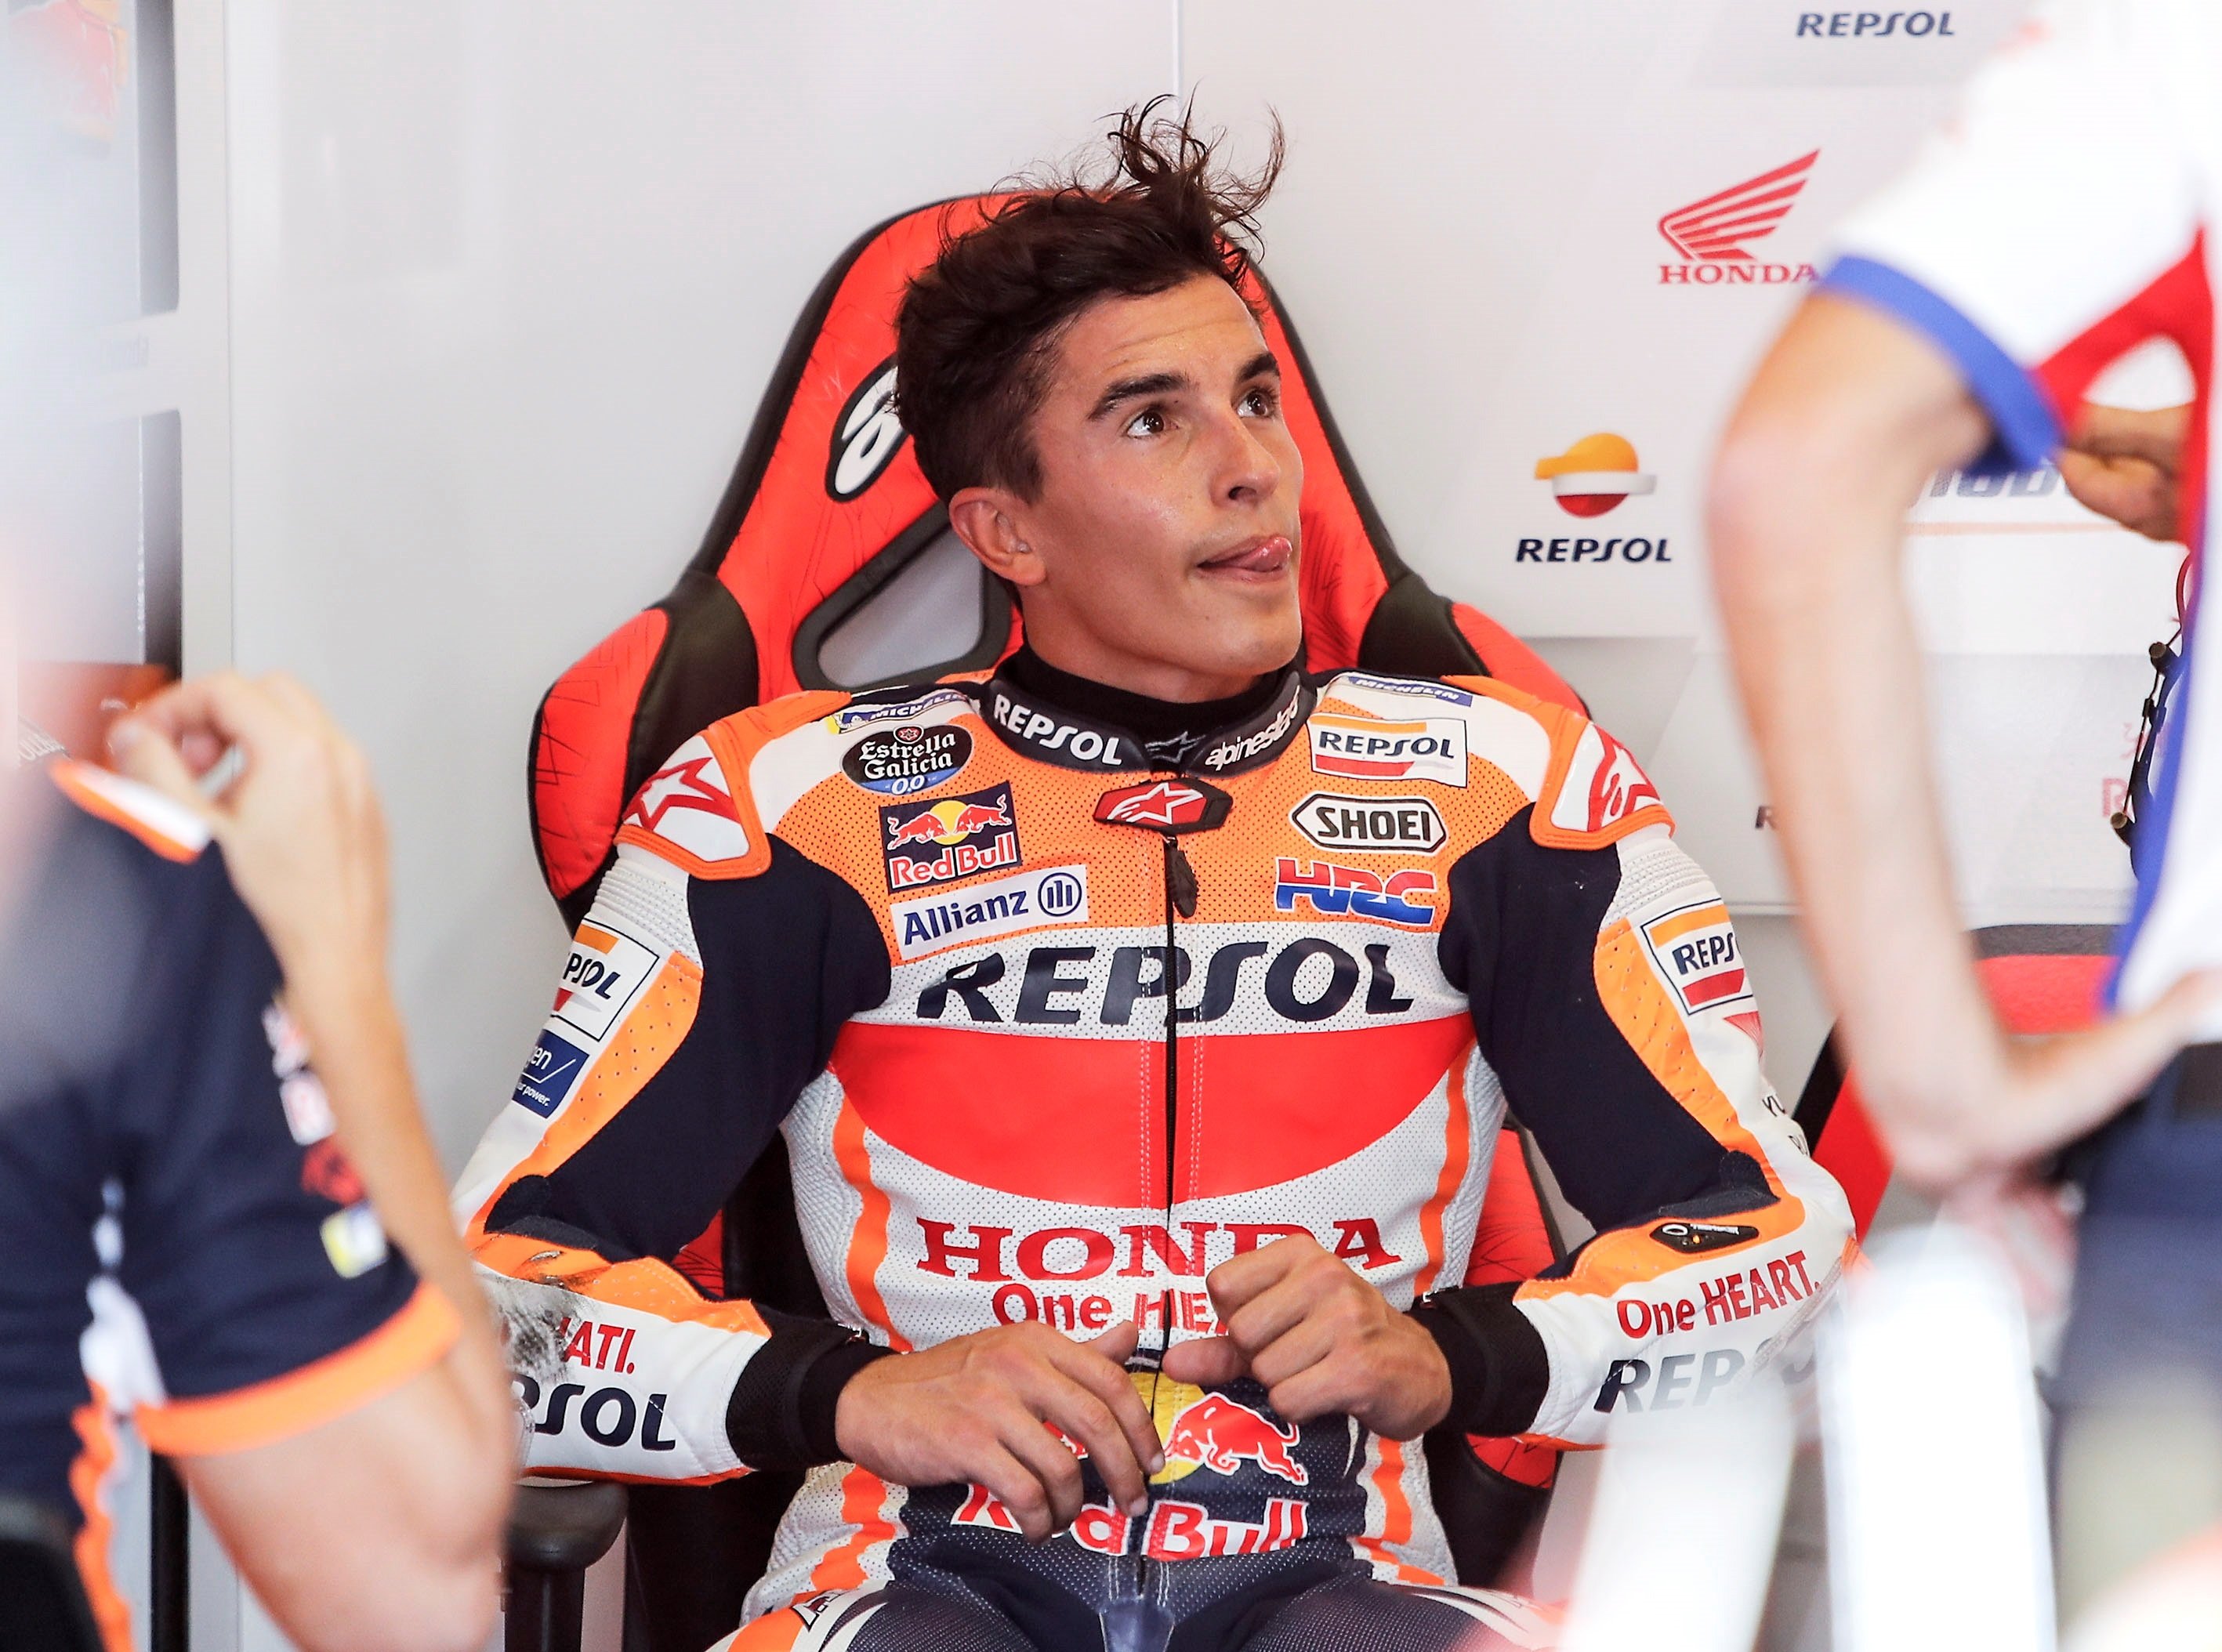 Márquez viatja a Jerez i vol córrer una setmana després de trencar-se el braç